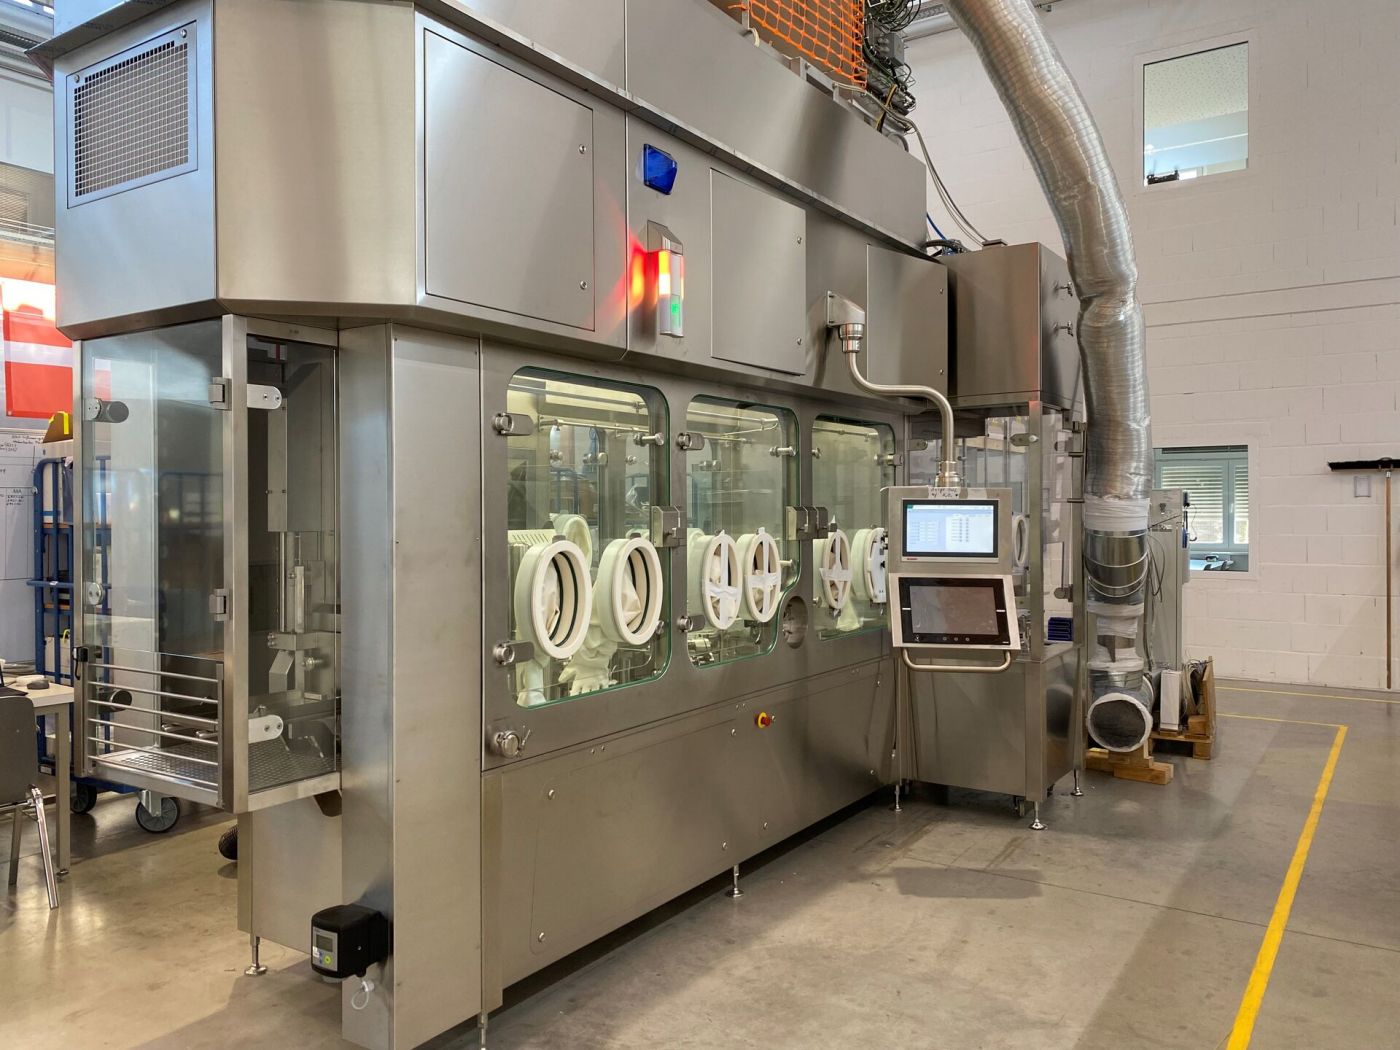 Eine große Maschine - ein Reinraum zur Herstellung von Medikamenten - steht in einer Halle. (Foto: privat)